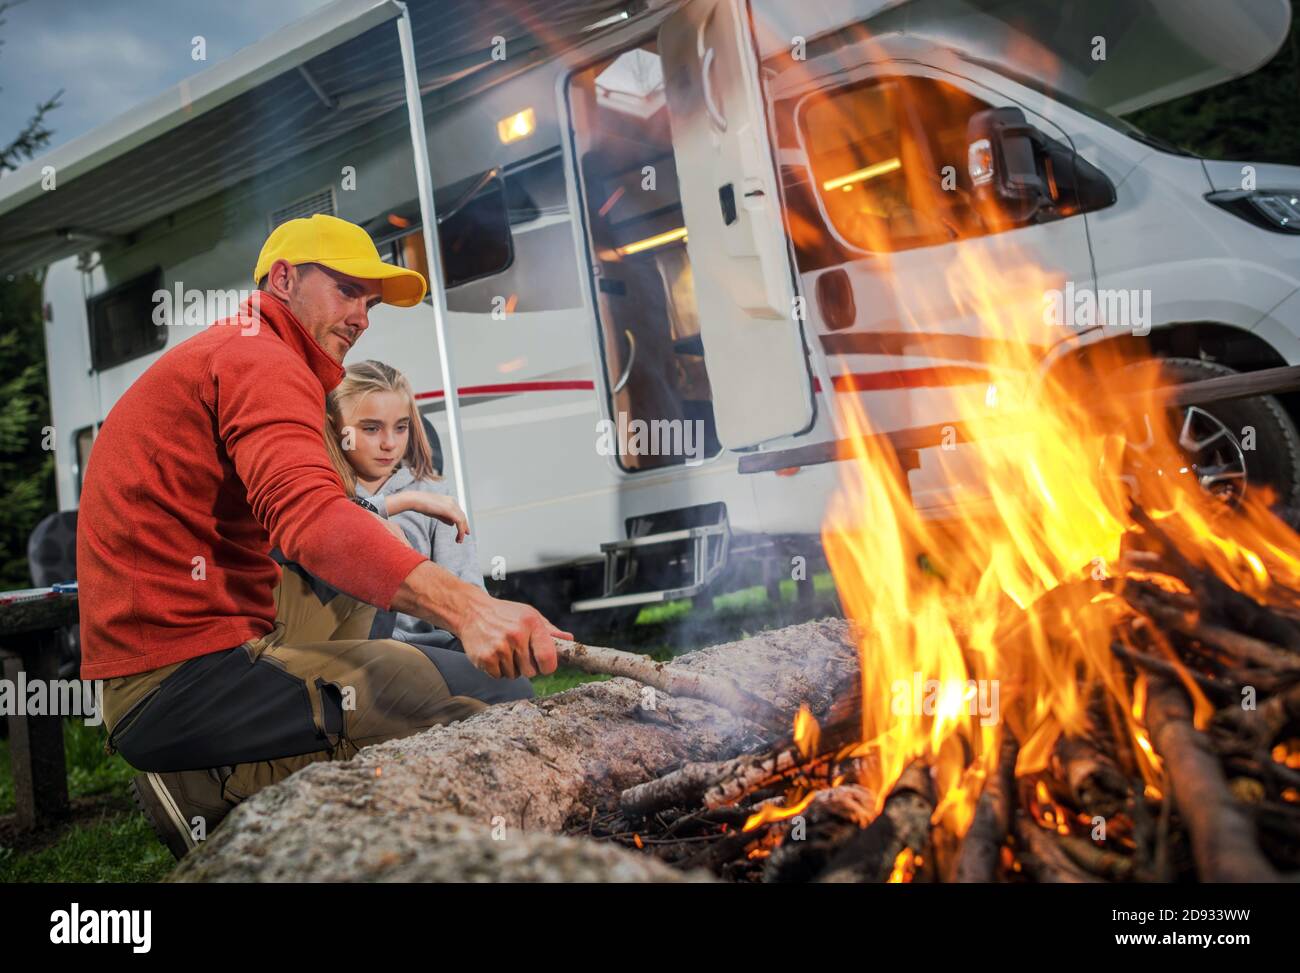 Vehículo Recreativo RV Camper Camping y tiempo Familiar. Padre caucásico y su hija Colgante junto a Campfire en su campo de estacionamiento RV. Clase C Mot Foto de stock